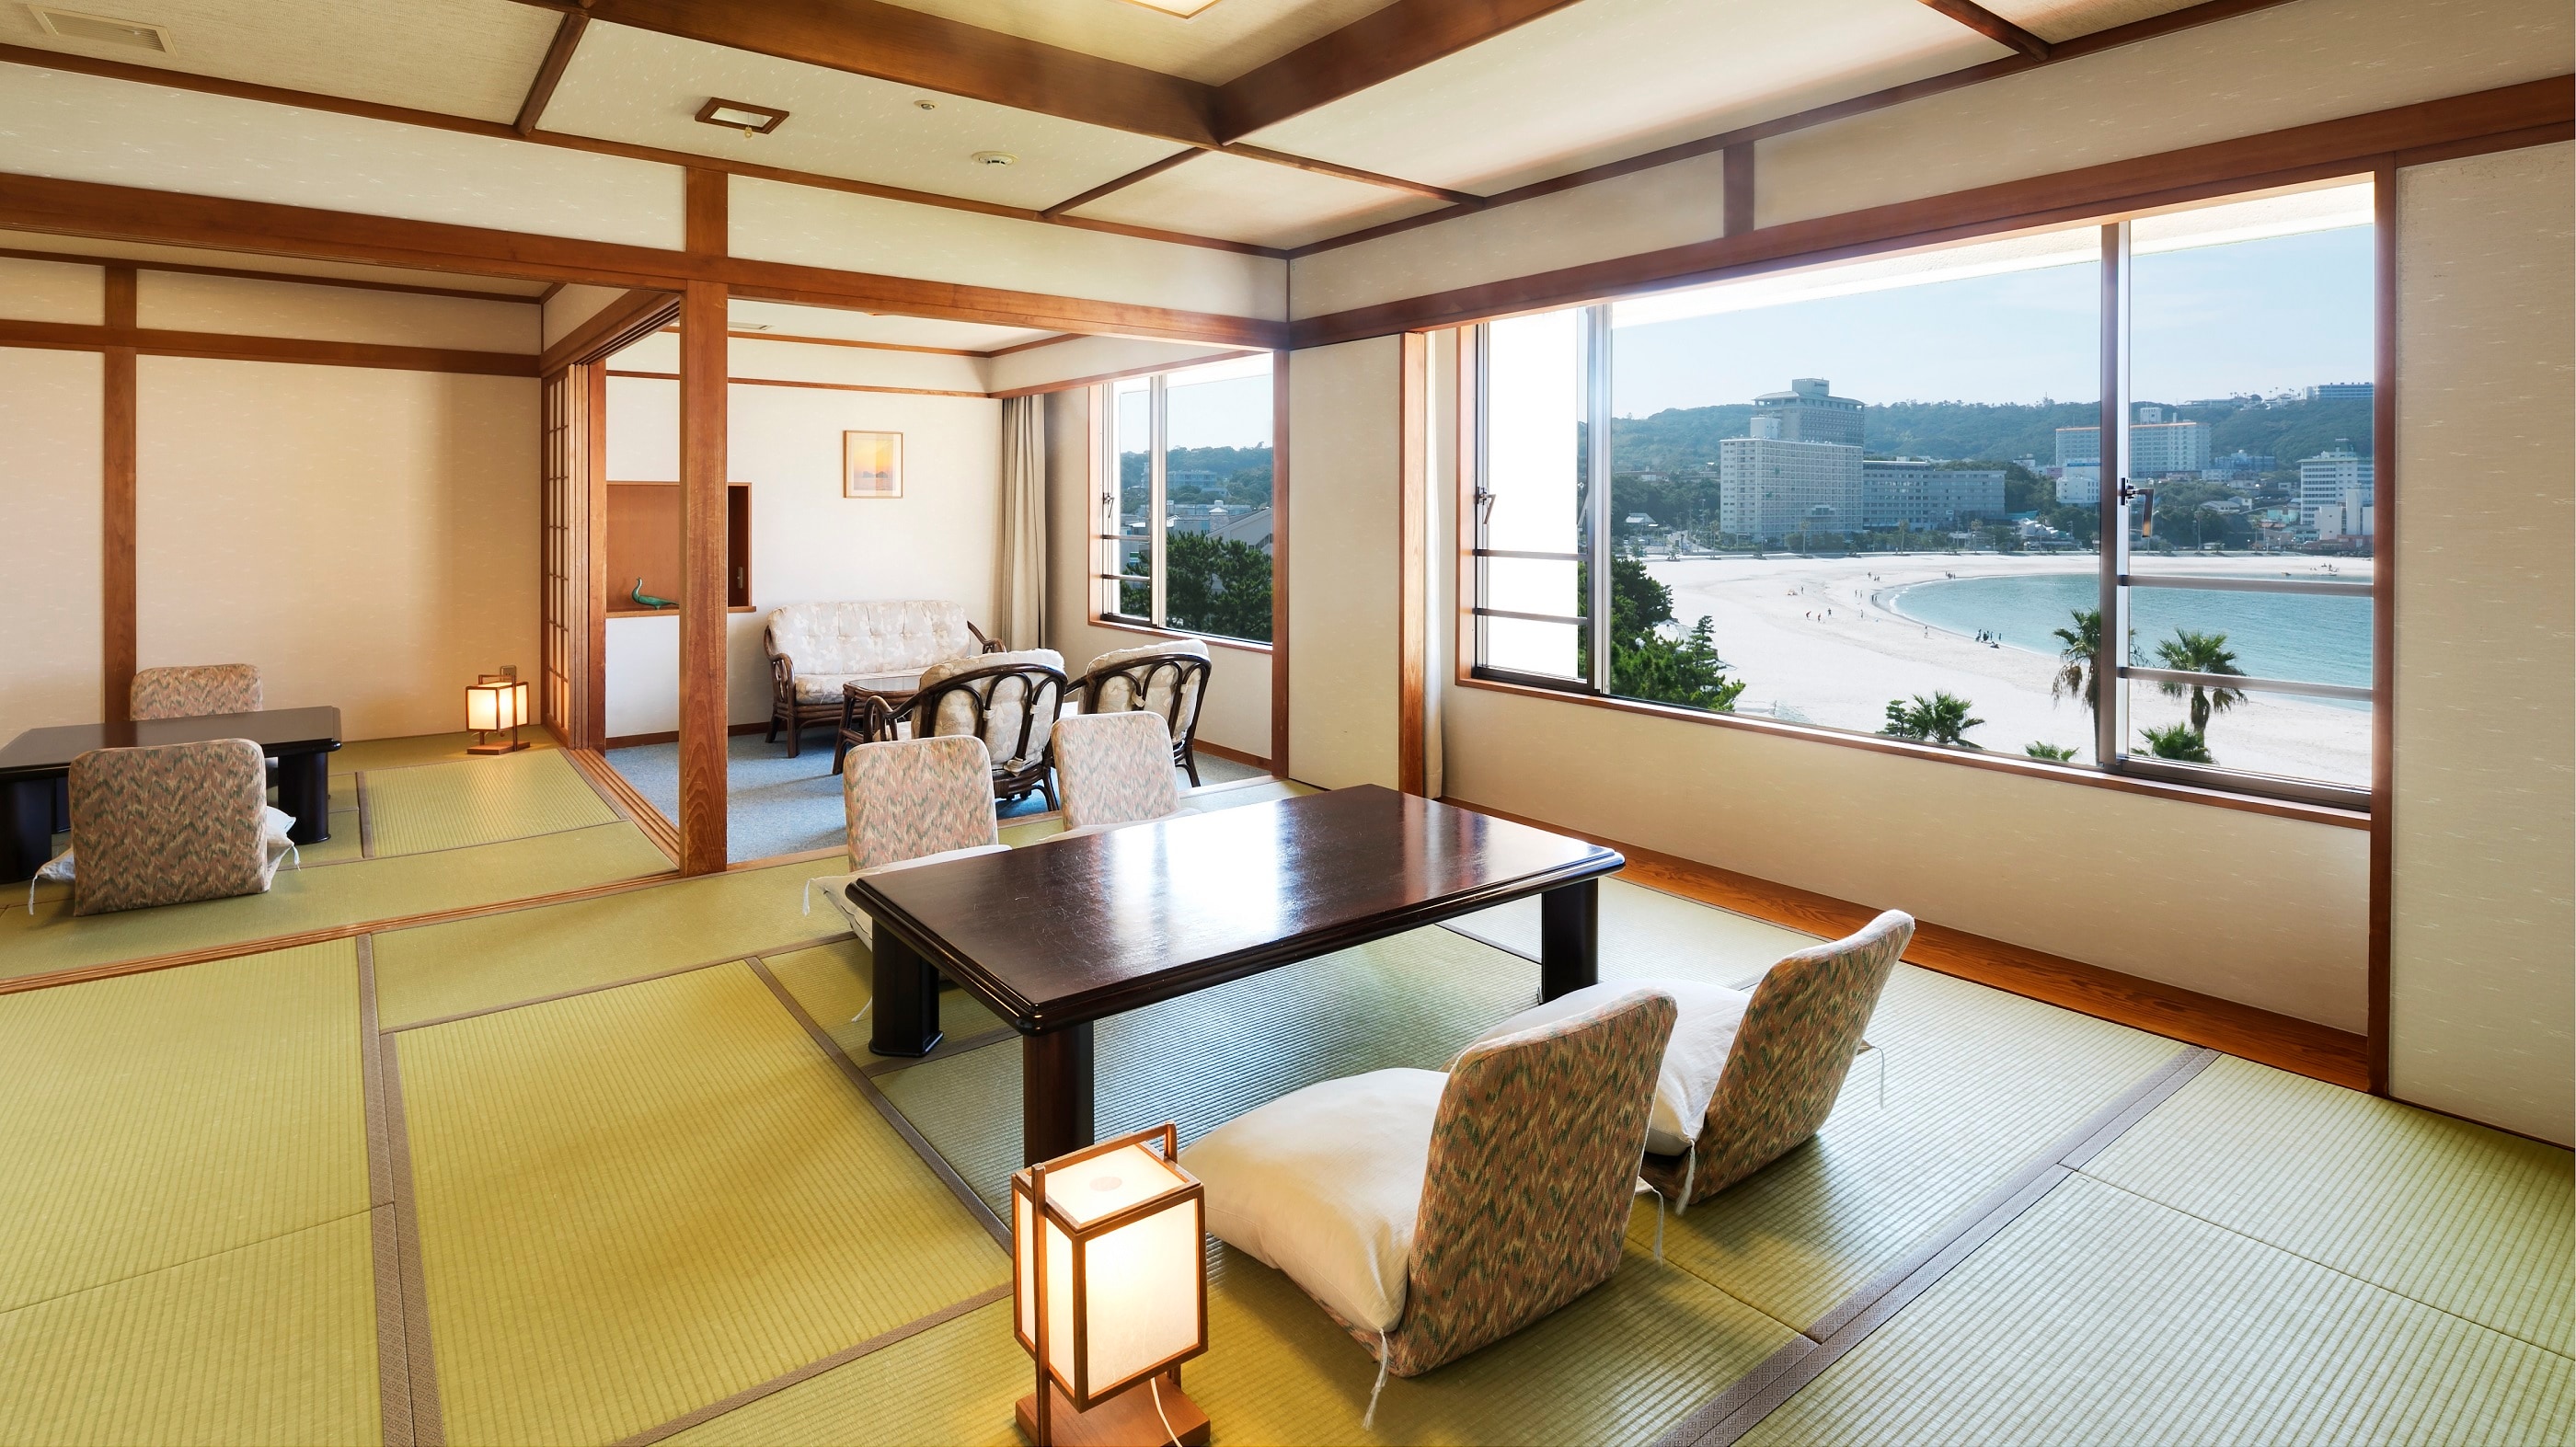 [ห้องดีลักซ์สไตล์ญี่ปุ่น] (12.5 เสื่อทาทามิ + 8 เสื่อทาทามิ) ห้องสไตล์ญี่ปุ่นที่มีพื้นที่รวม 70 ตารางเมตร (ความจุ: 7 คน)